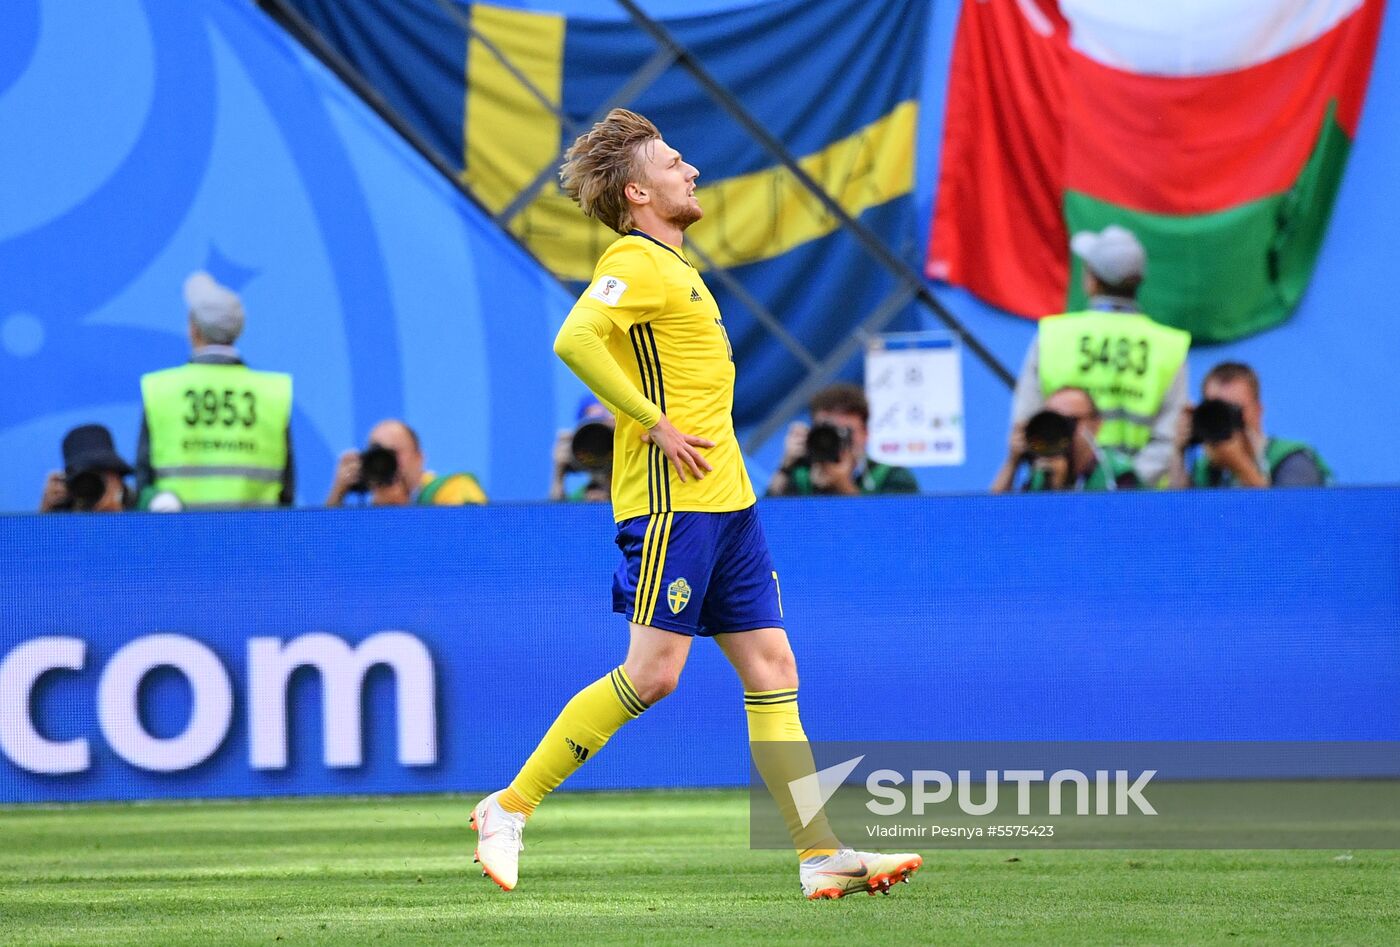 Russia World Cup Sweden - Switzerland 